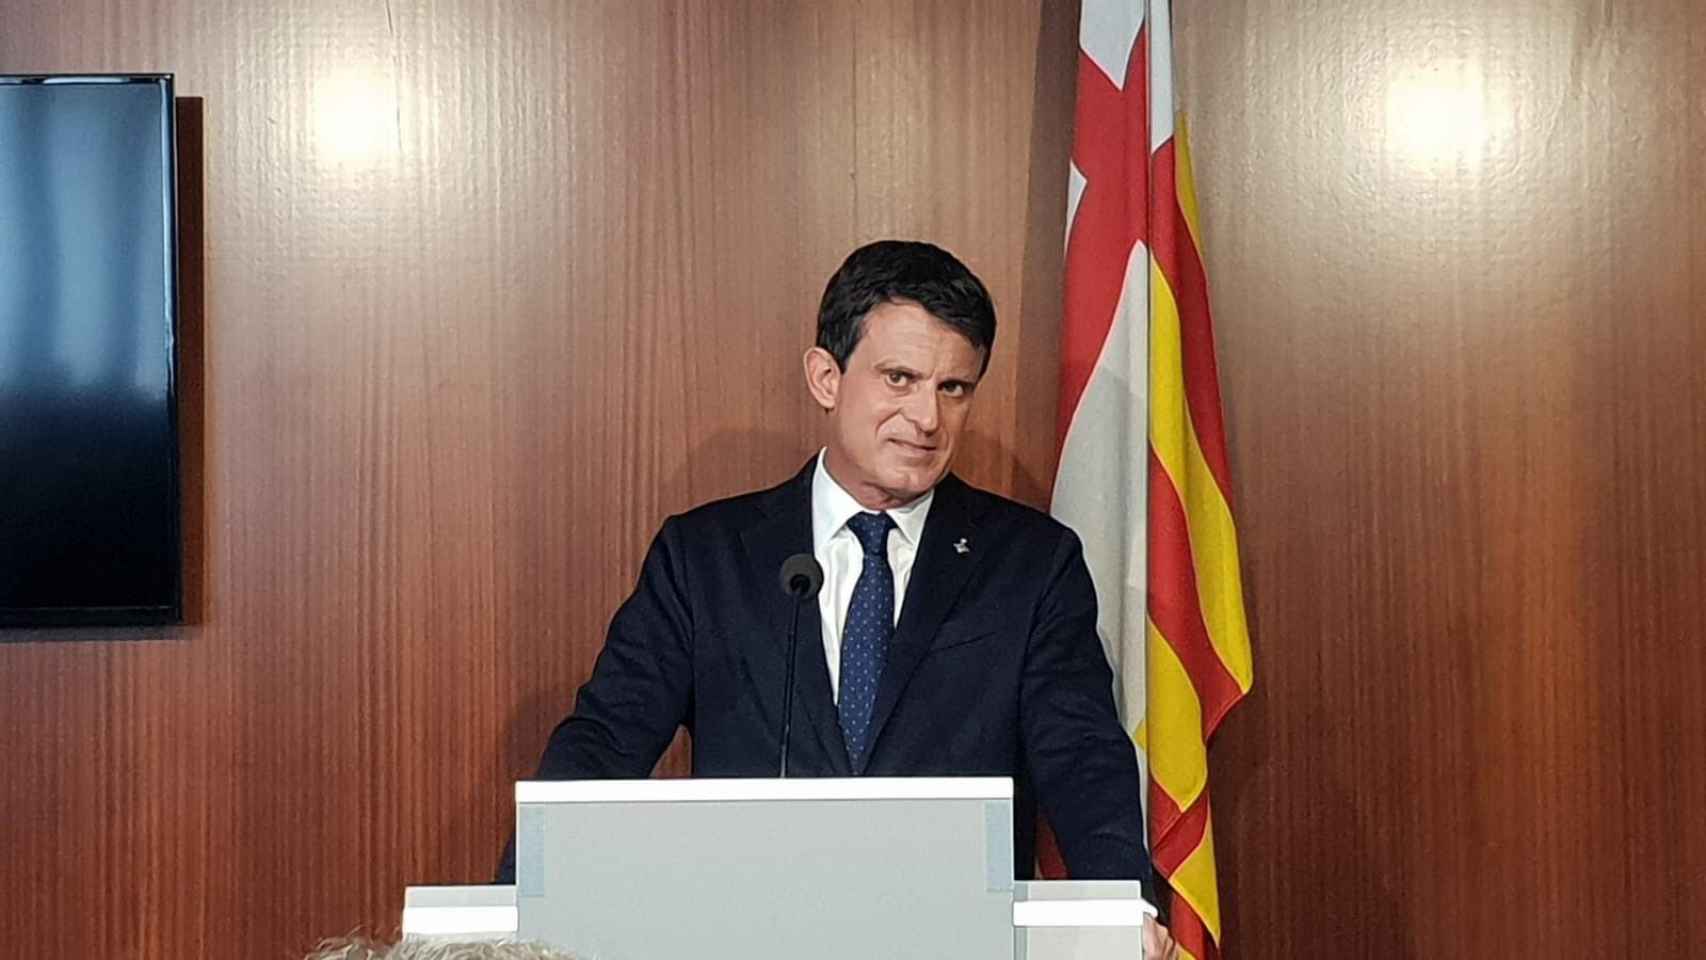 Manuel Valls en una imagen de archivo / EUROPA PRESS